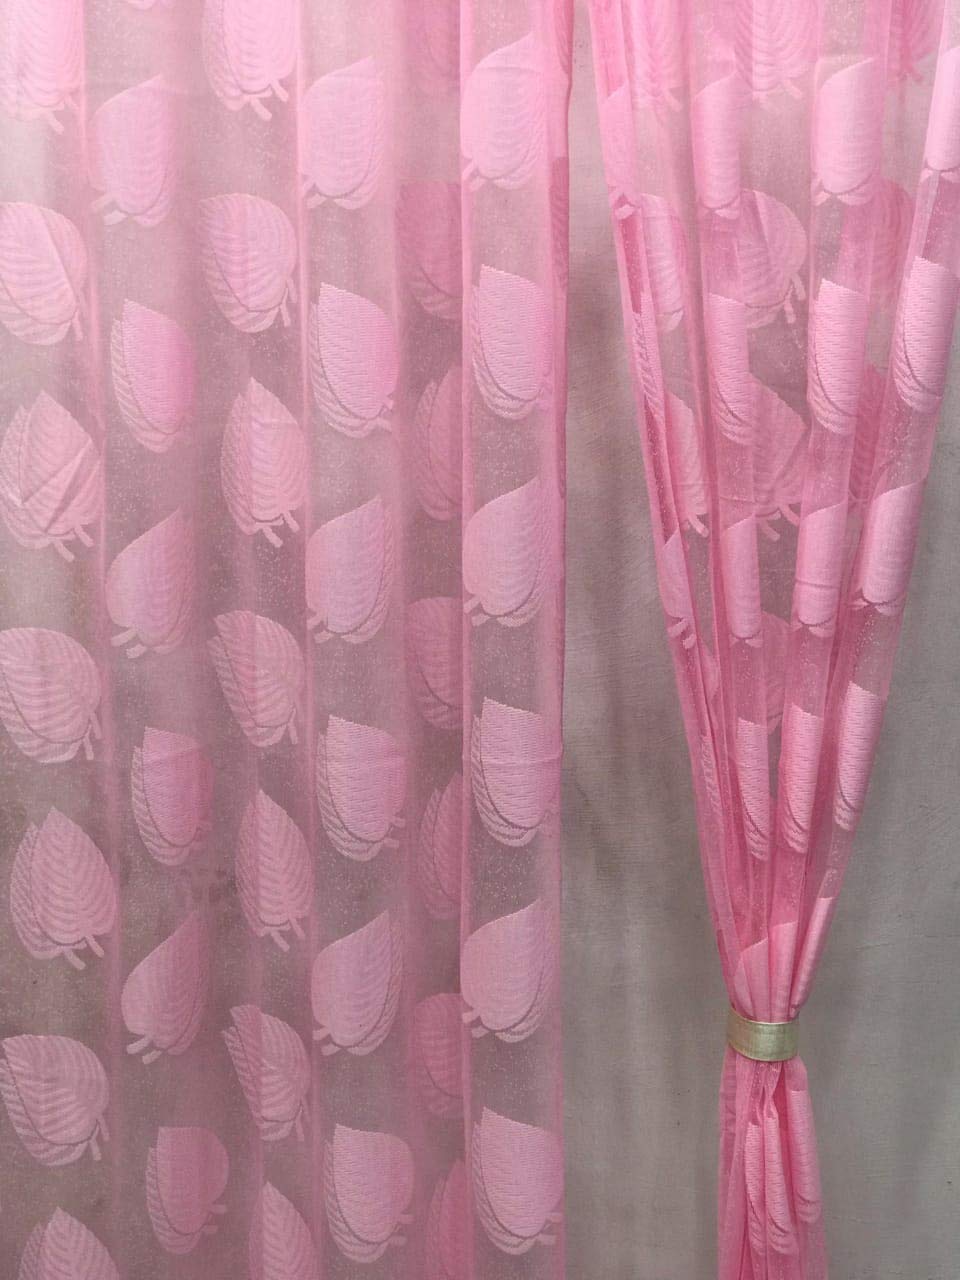 Leaf Design Pink Sheer